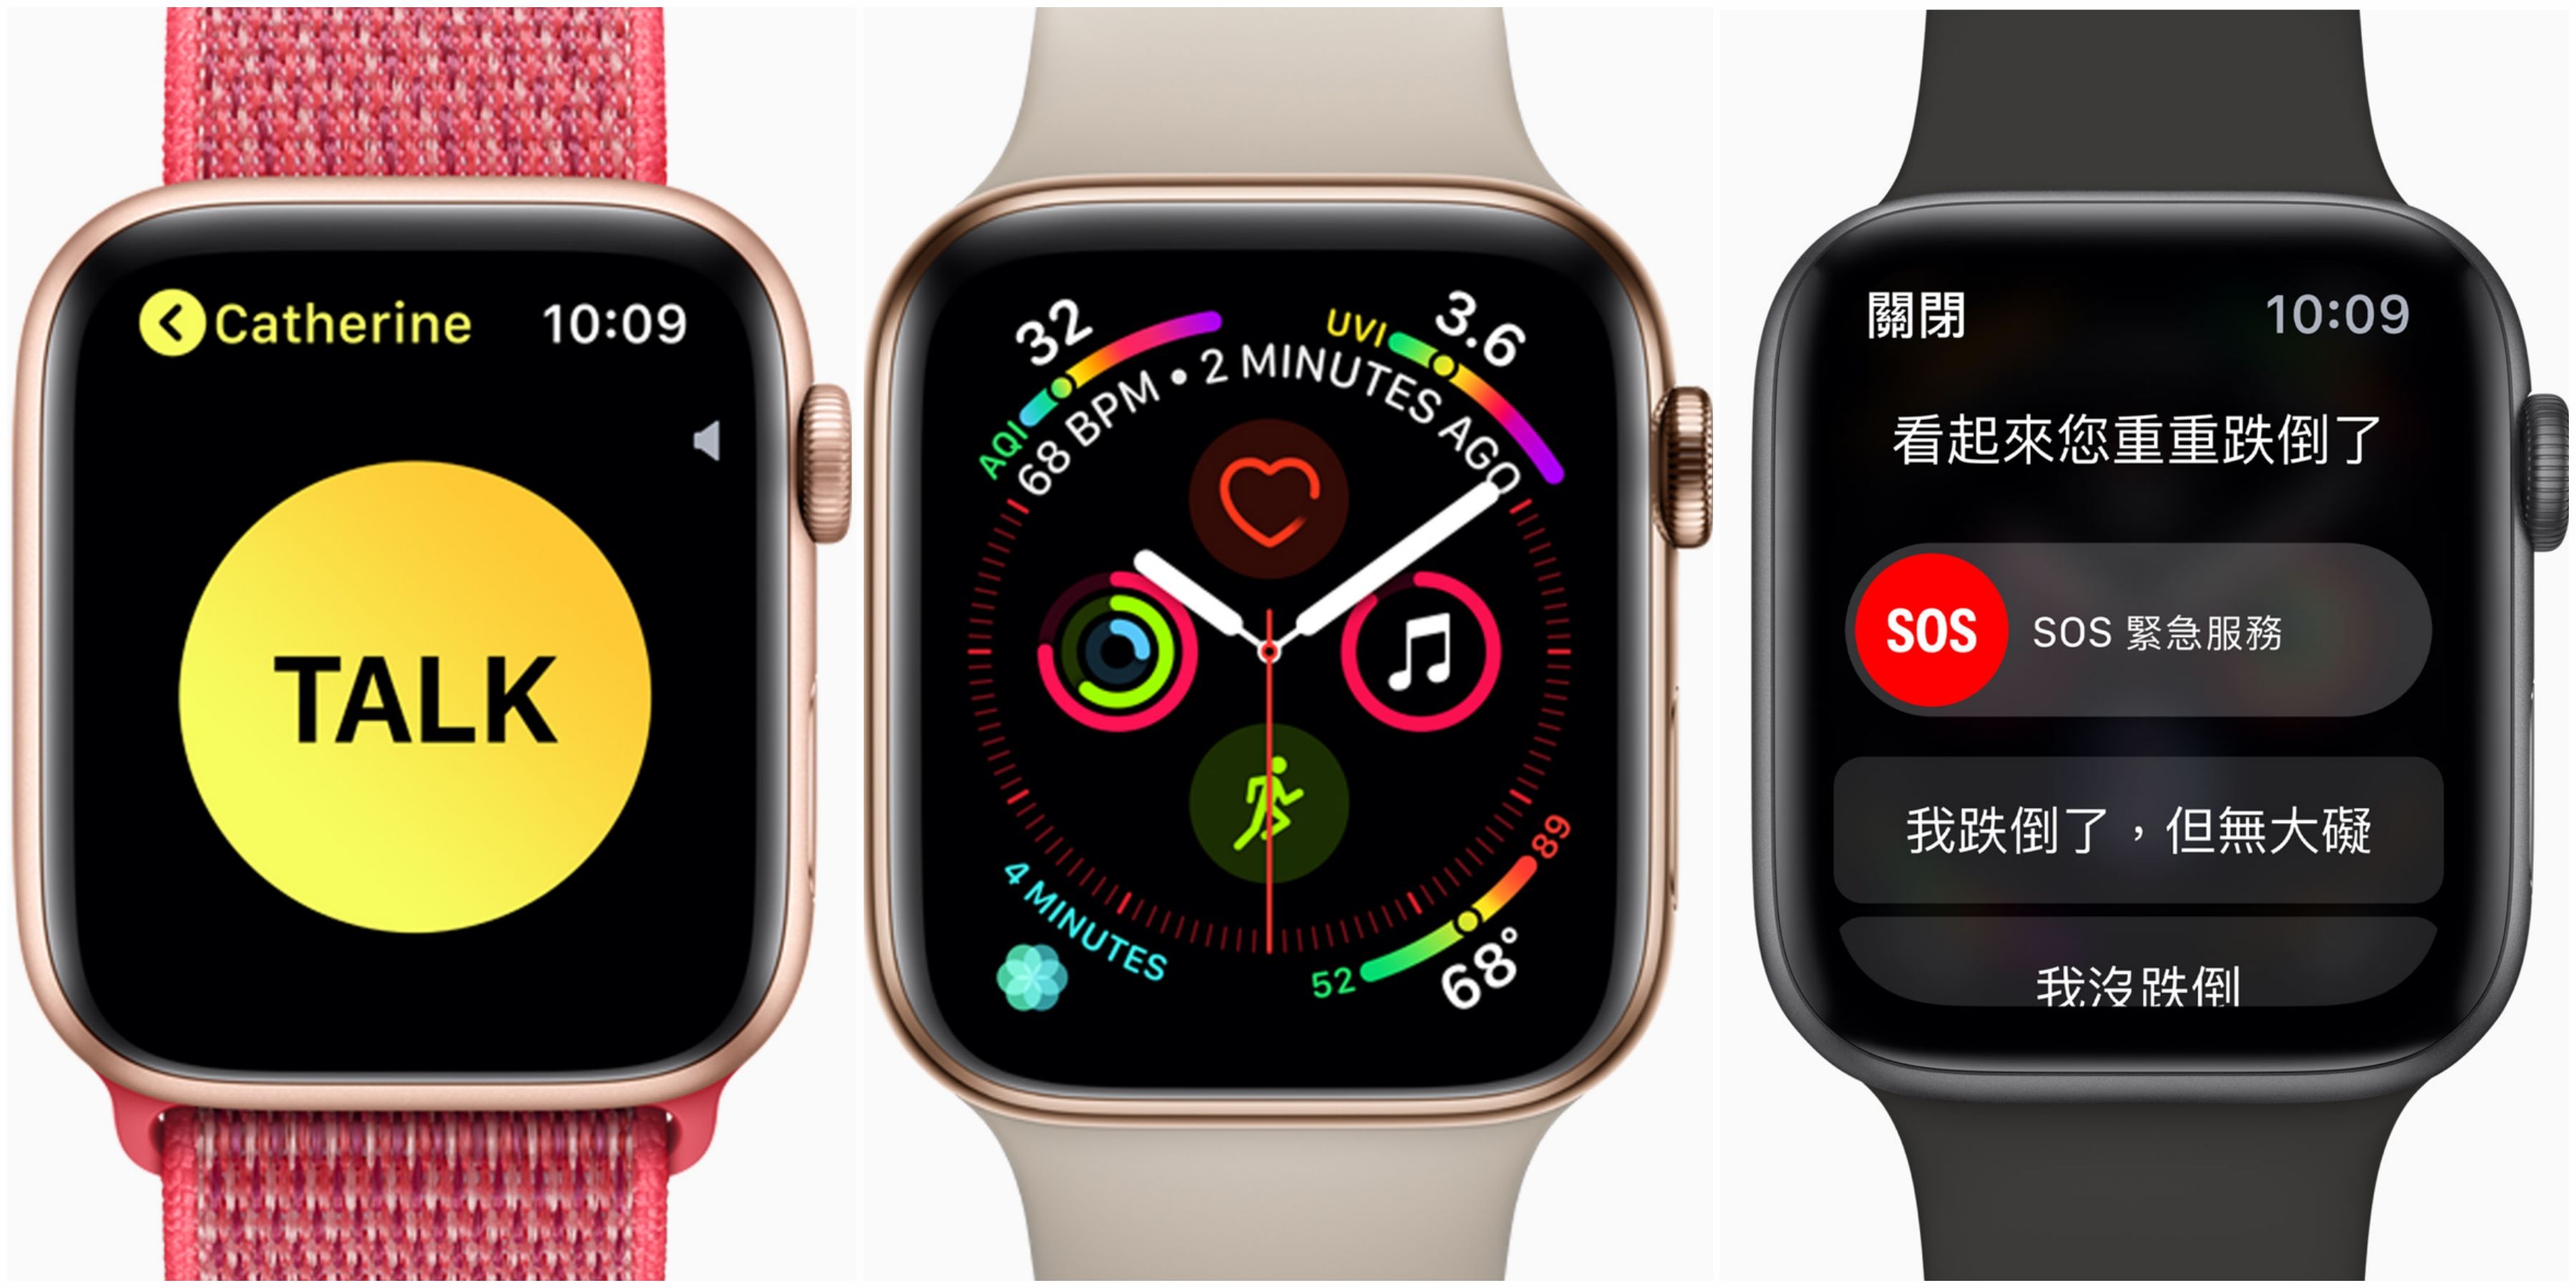 達人推薦3款必備app Apple Watch Series 4你買了嗎 8功能合一的圖文錶面 無距離限制的對講機超實用